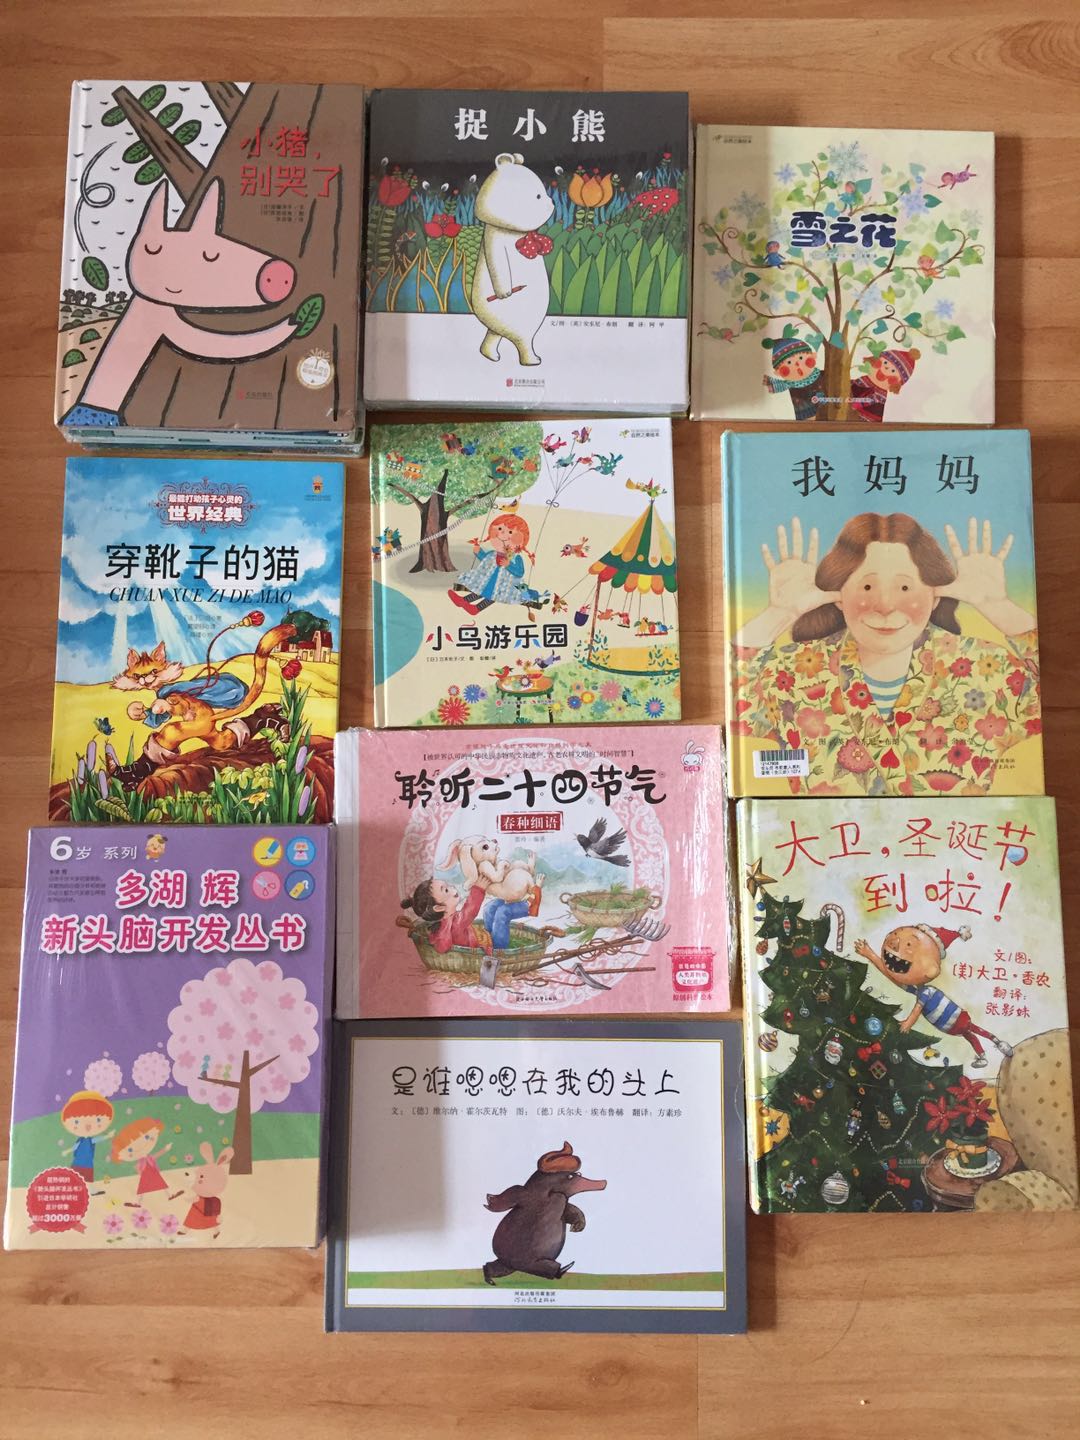 喜欢在买买买书！喜欢给孩子买绘本和英语书籍。希望孩子能学到更多知识。